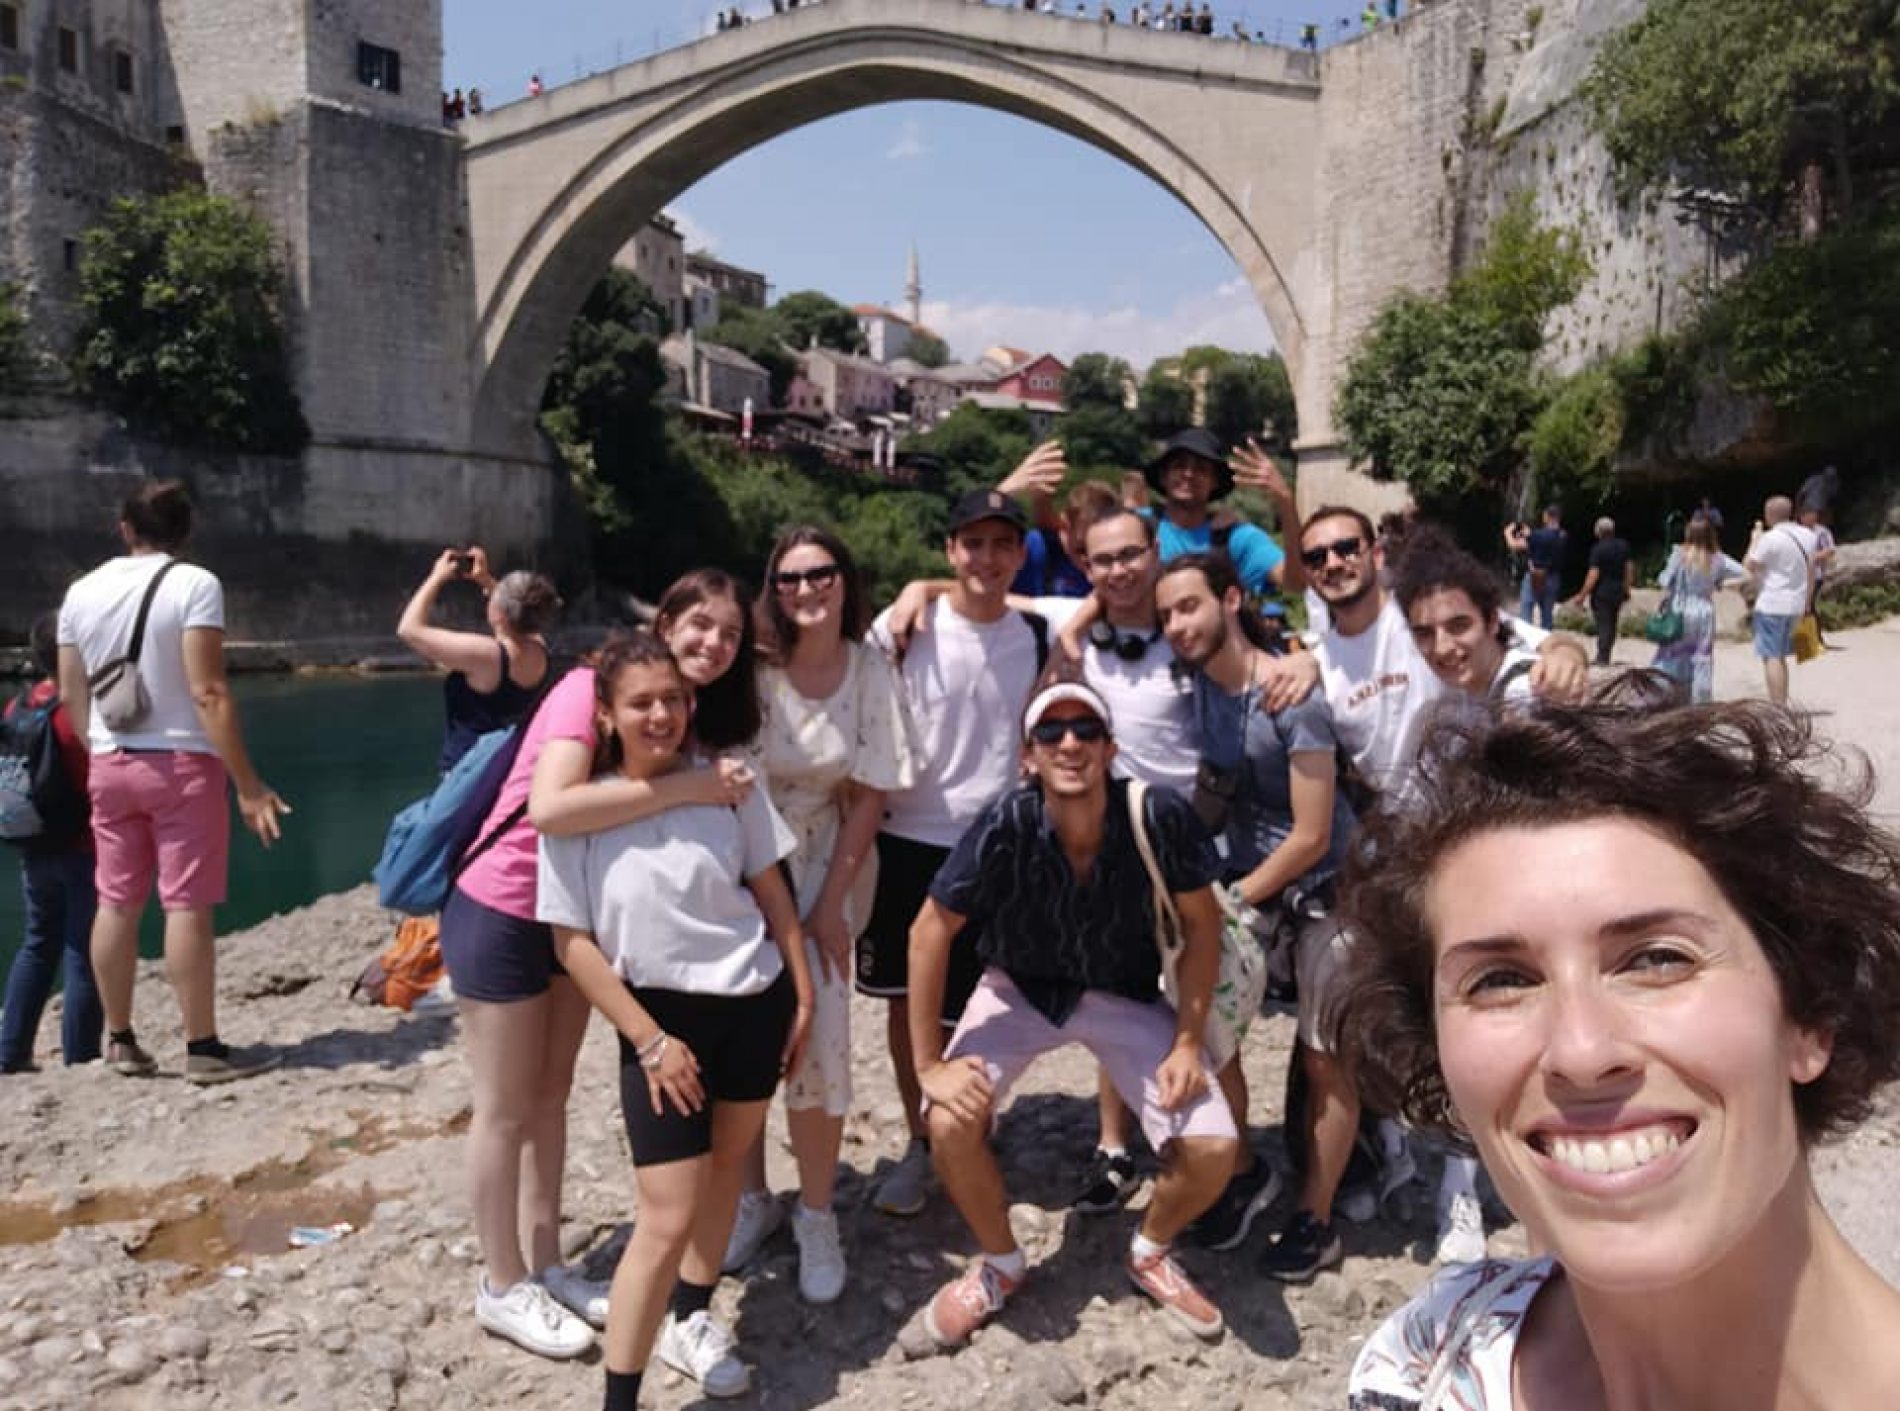 Italijanski srednjoškolci na radnoj praksi u Sarajevu:  ‘Veliko hvala Bosni i Hercegovini, ovom gradu i ovim ljudima koji su me promijenili’